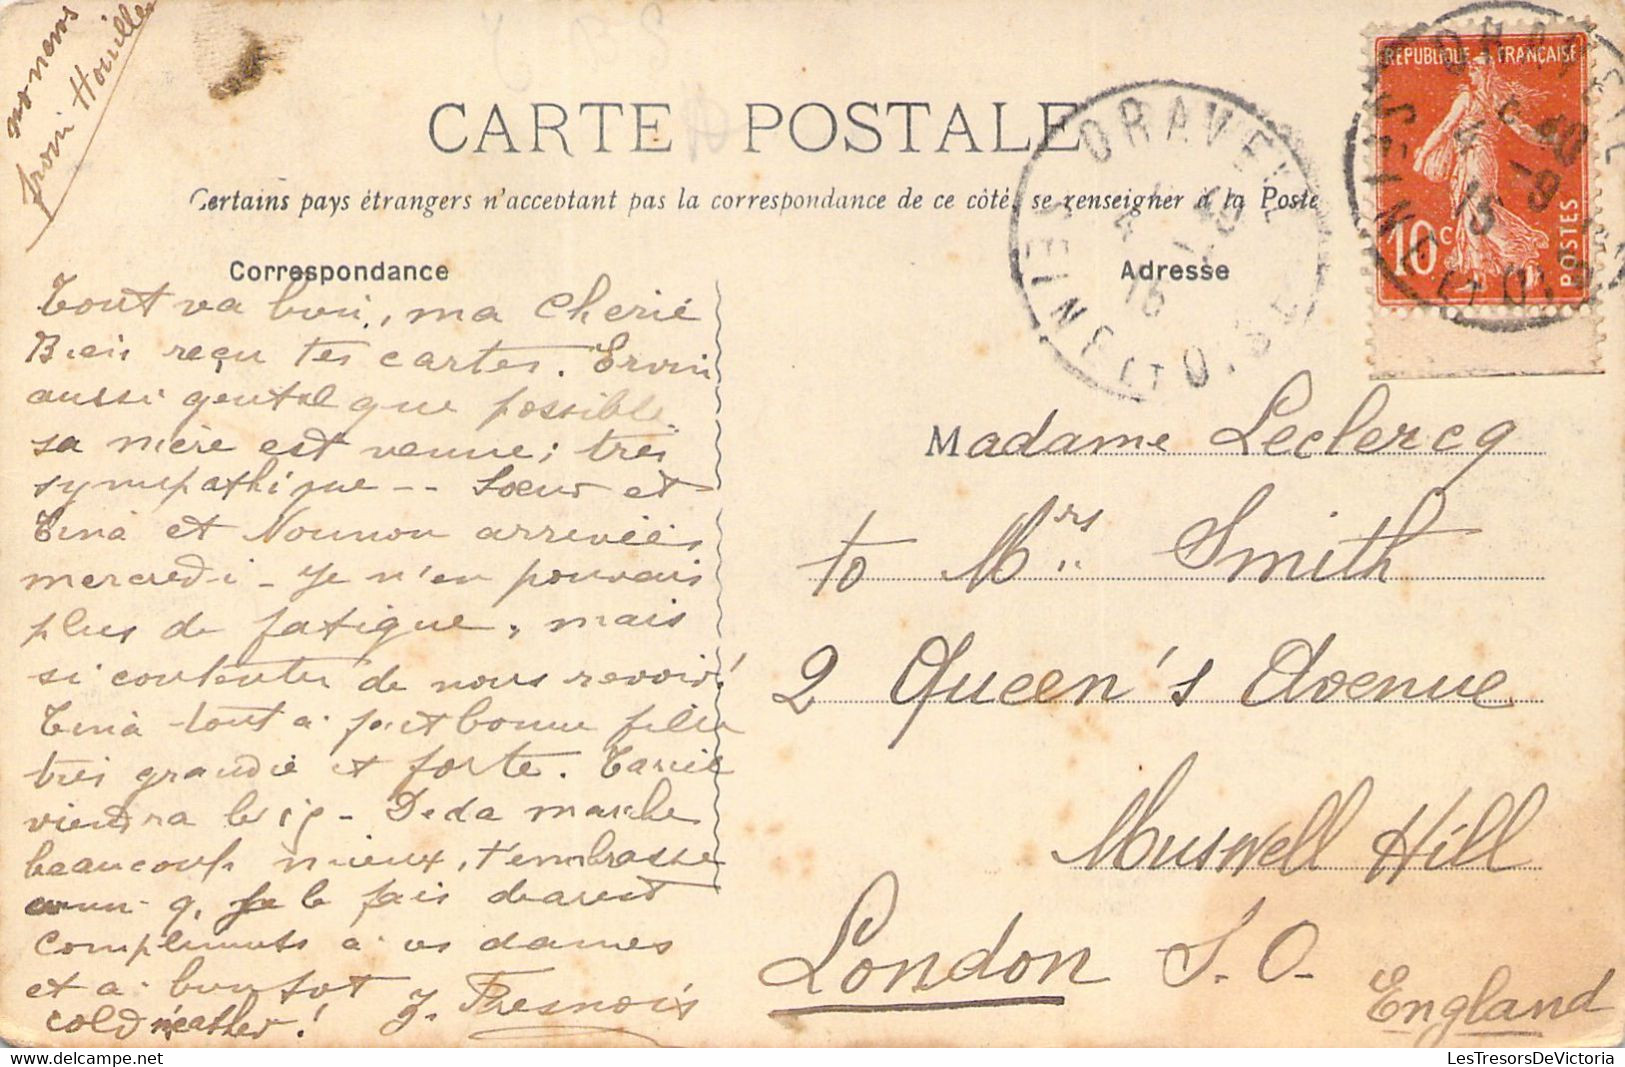 FRANCE - 91 - DRAVEIL - Grande Rue - Edition Lecot Draveil - Carte Postale Ancienne - Draveil